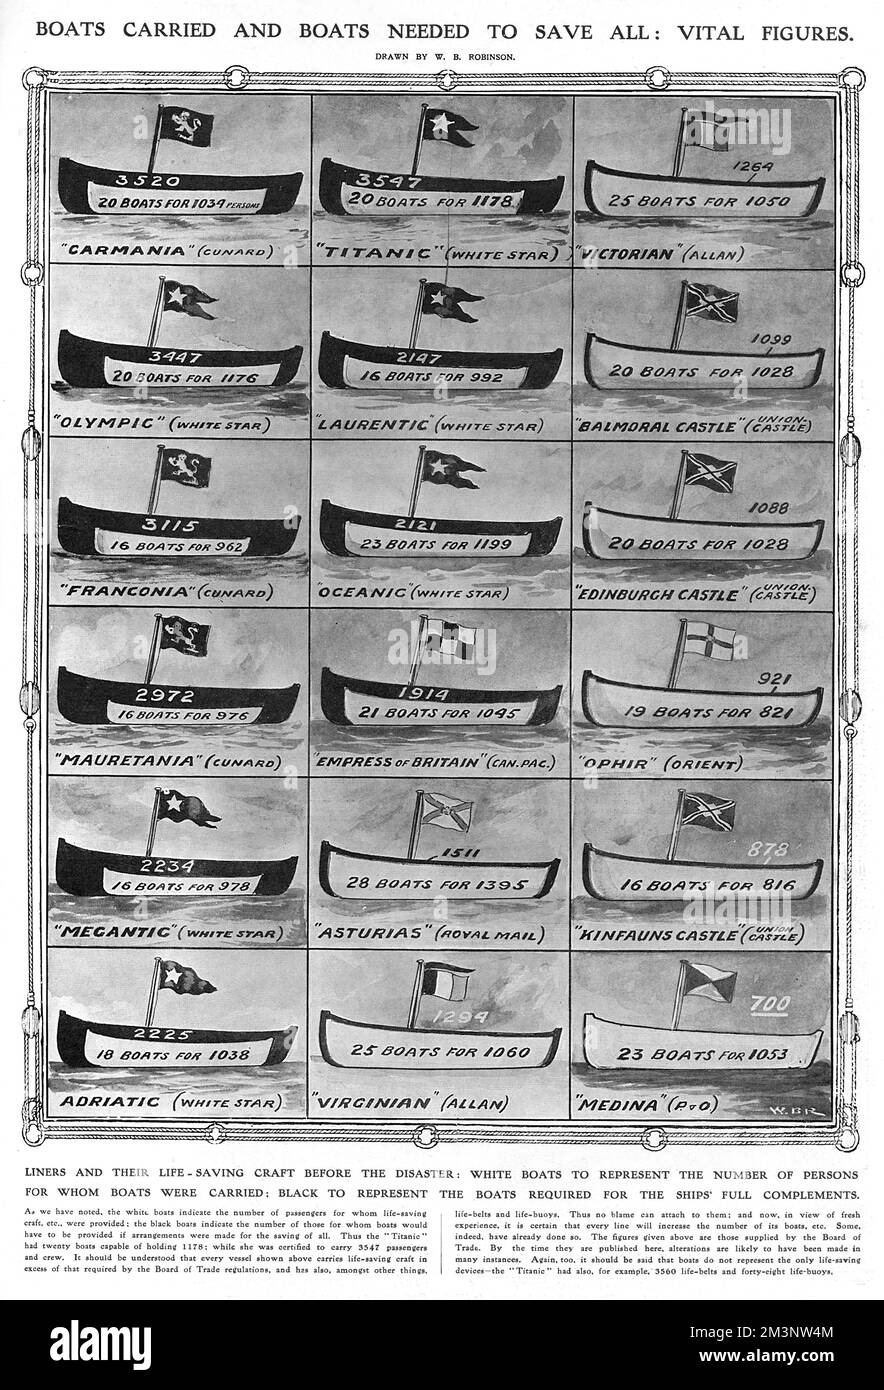 Ein Diagramm, das in den illustrierten London News nach der Katastrophe des Untergangs des Passagierschiffes „White Star“ veröffentlicht wurde, RMS Titanic, das das Verhältnis der Kapazität von Rettungsbooten zu Passagierzahlen an Bord verschiedener Schiffe zeigt und Fragen zu den Sicherheitsvorkehrungen aufwirft. Die linke Spalte zeigt die schlimmsten Schuldigen, darunter Mauretania (nur 976 Rettungsboote für 2972 Passagiere) und Cunard's Franconia (nur 962 Rettungsboote für 3115 Passagiere). Dem Schwesterschiff der Titanic, der Olympic, ging es nicht viel besser als seinem unglückseligen Geschwister, das nur 20 Rettungsboote für 1176 Pässe hatte Stockfoto